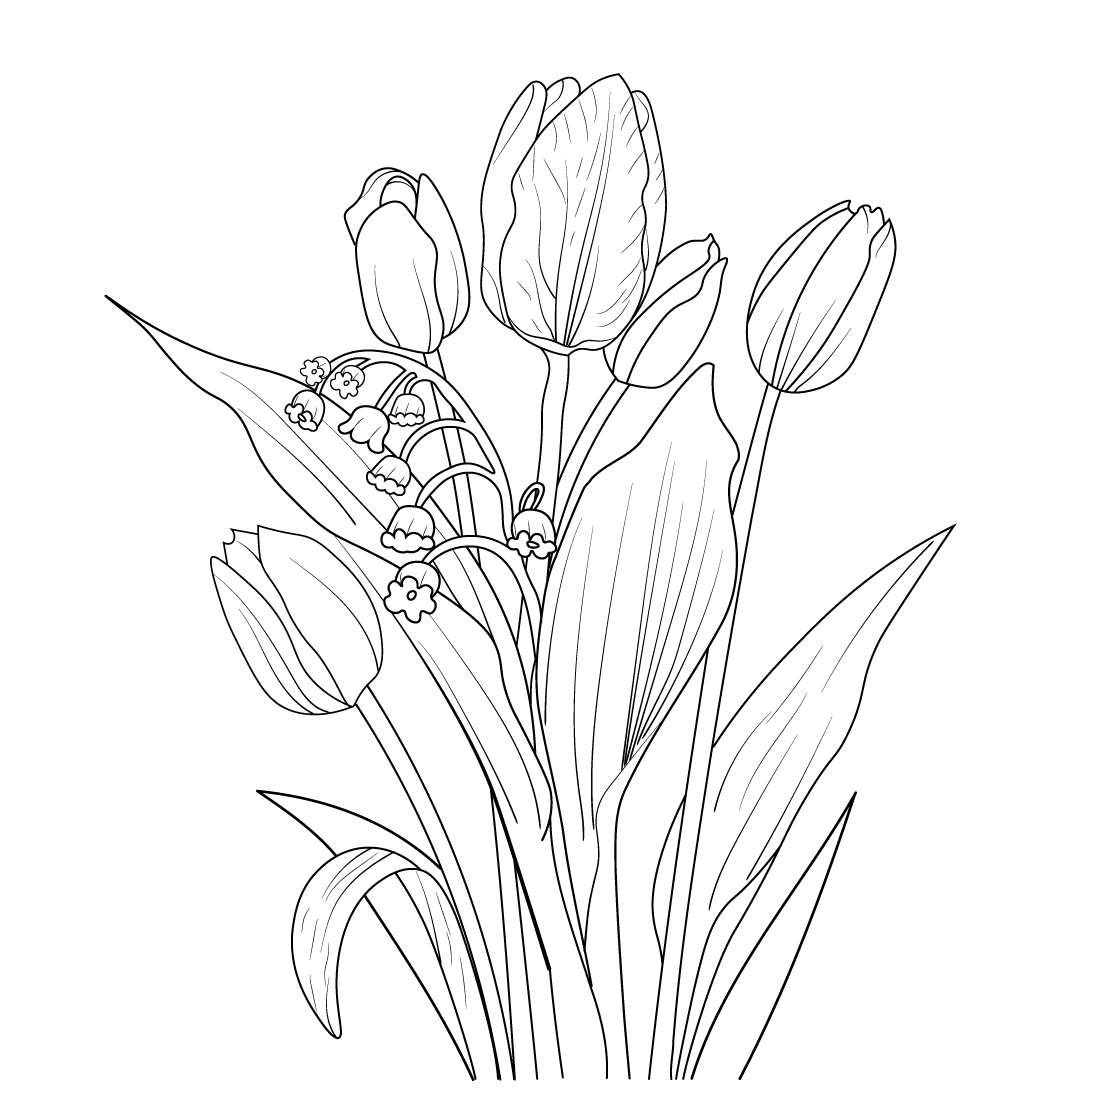 flower sketch | Illustration and Animation Blog